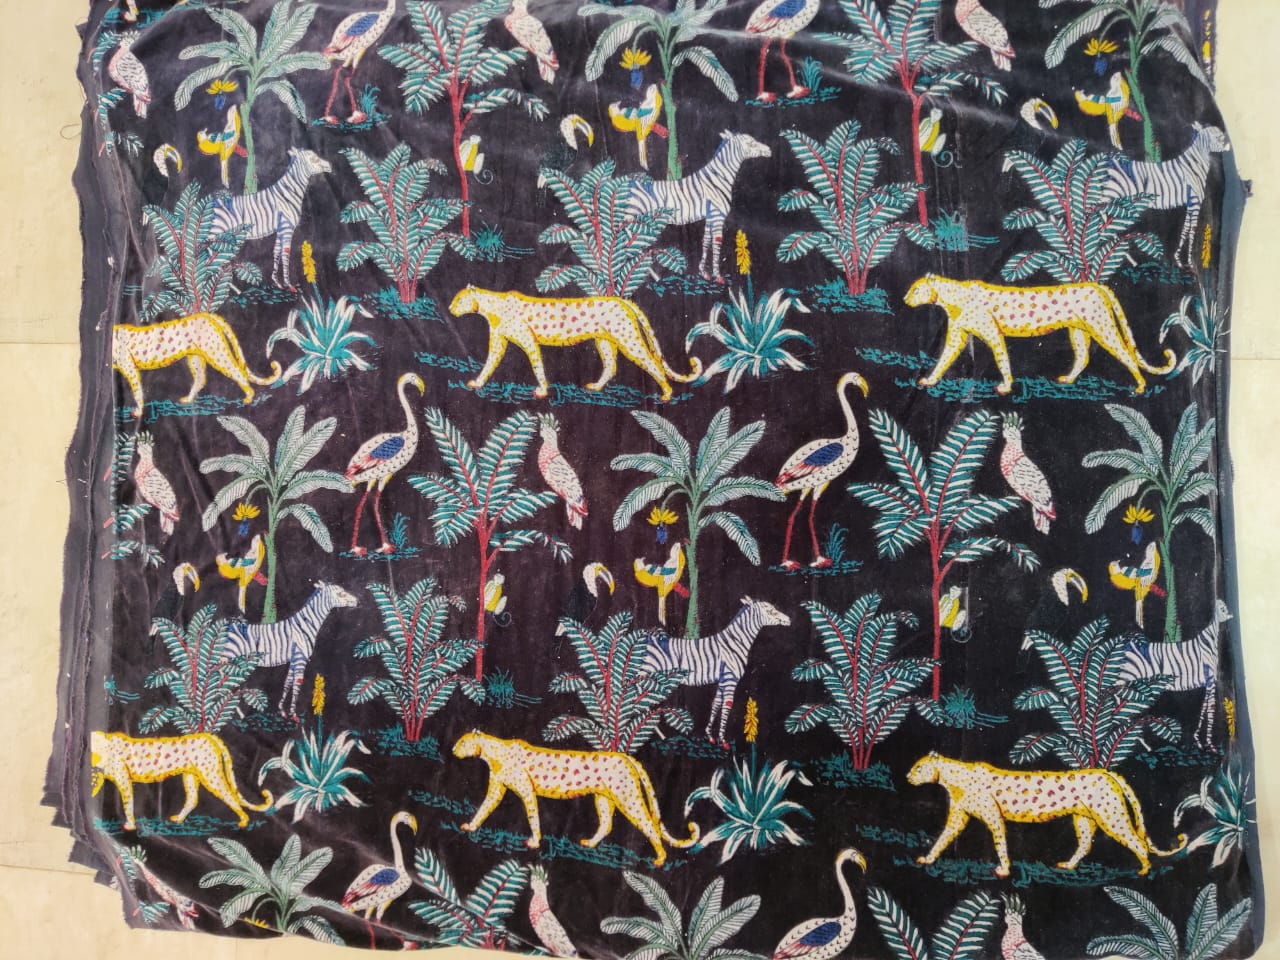 Jungle Print Velvet Fabric for Upholstery- Black